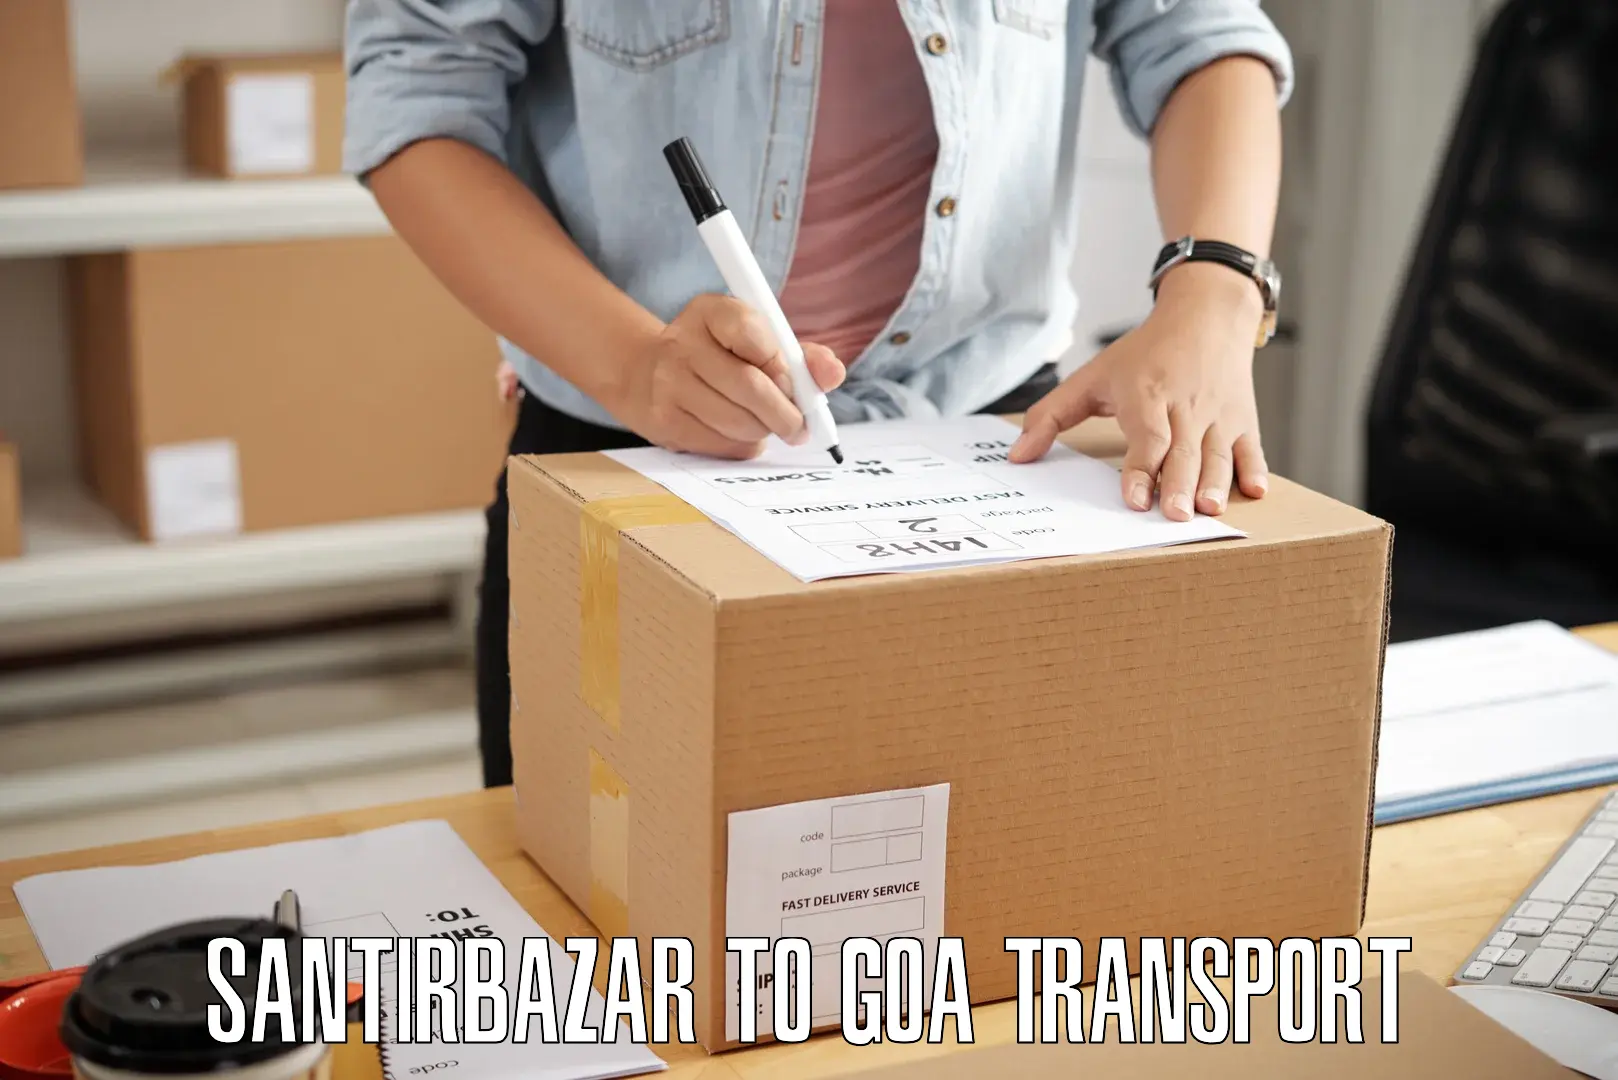 Shipping partner Santirbazar to Goa